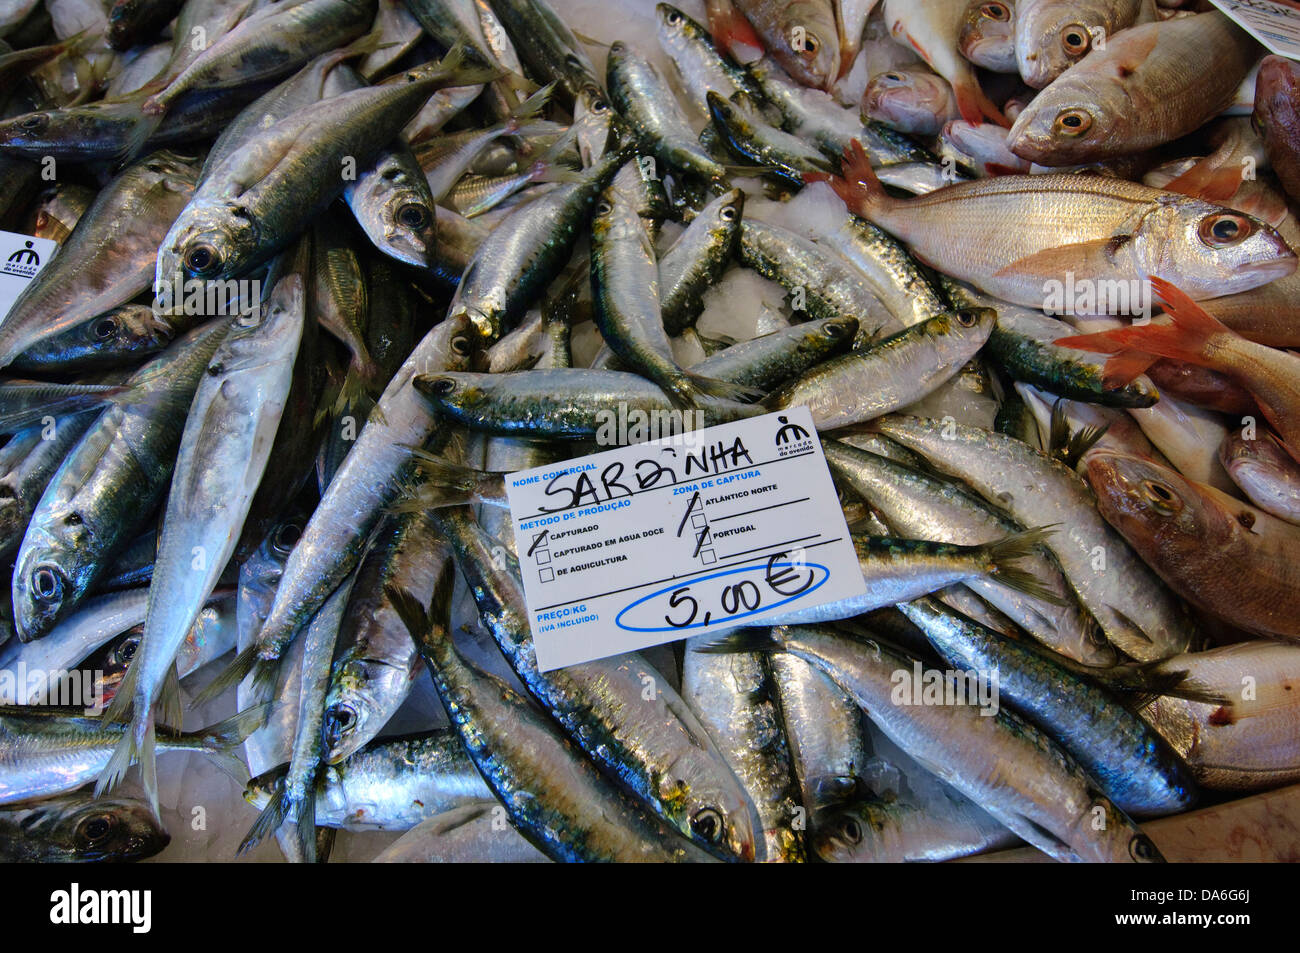 Algarve, le poisson, le marché aux poissons, Lagos, Portugal, du poisson, de l'alimentation Banque D'Images